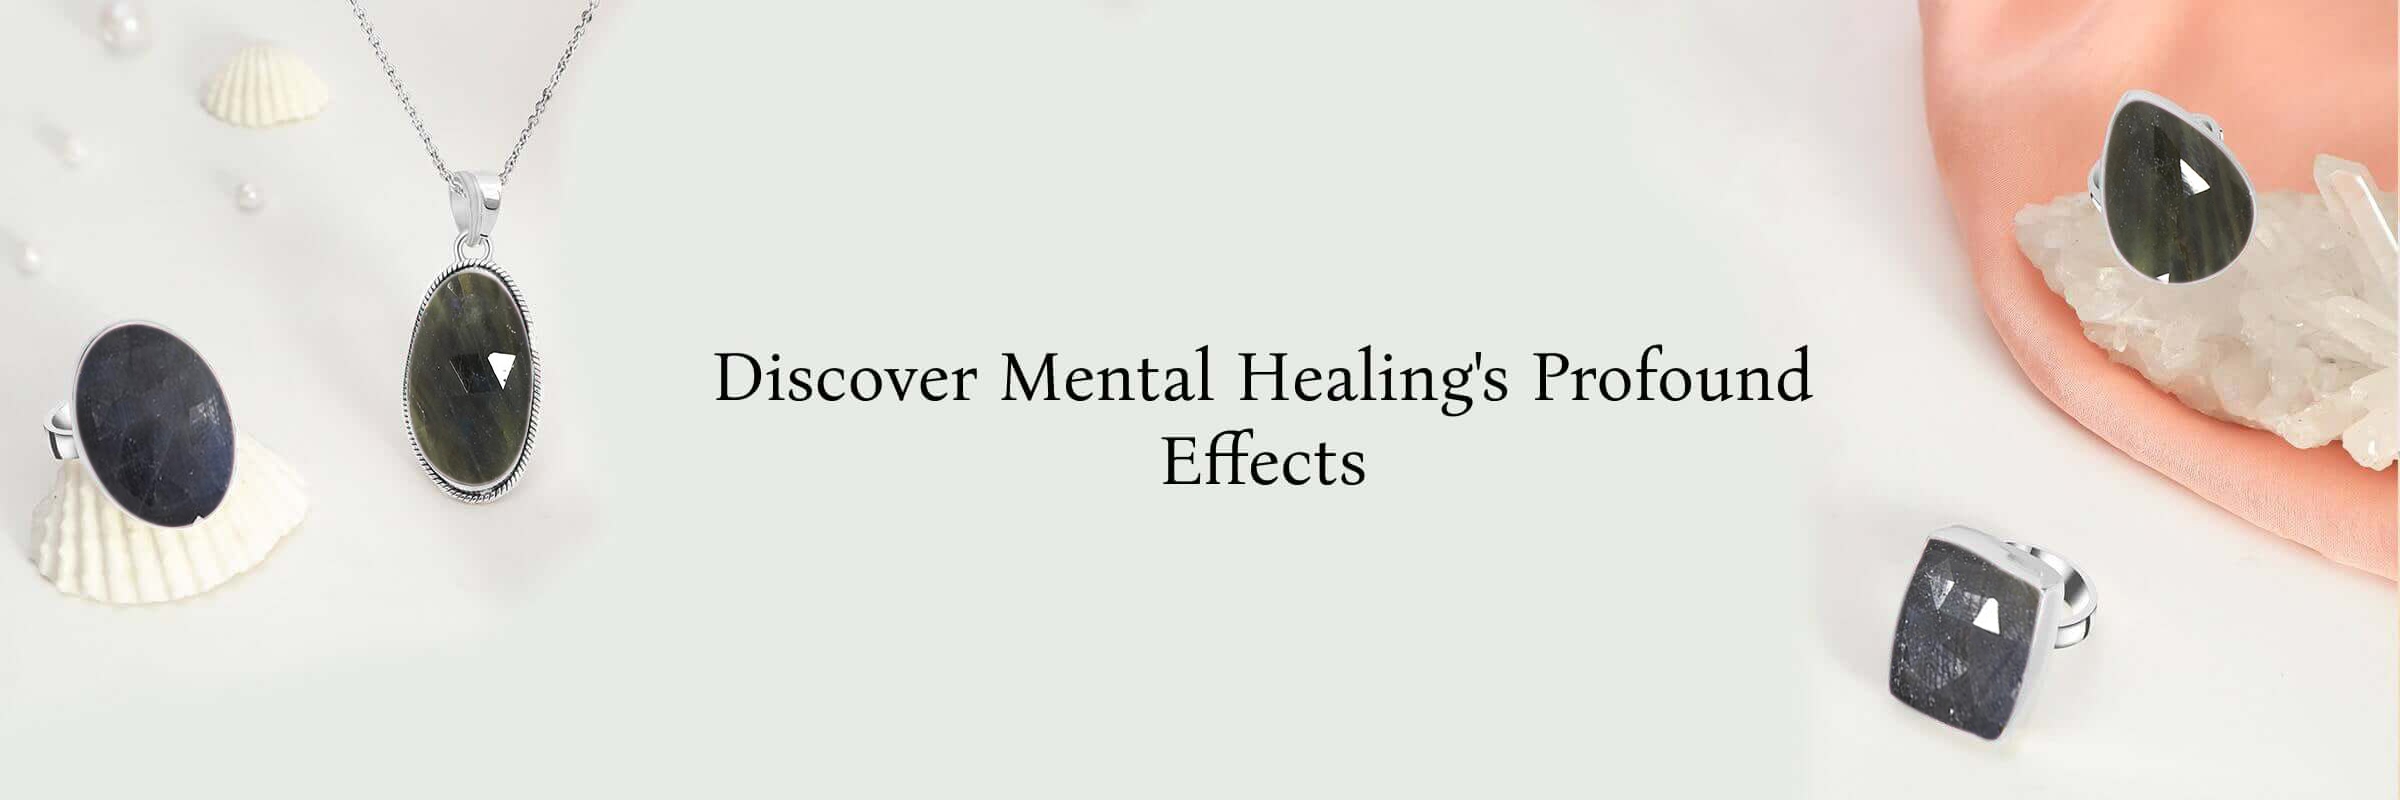 Sapphire Mental healing properties